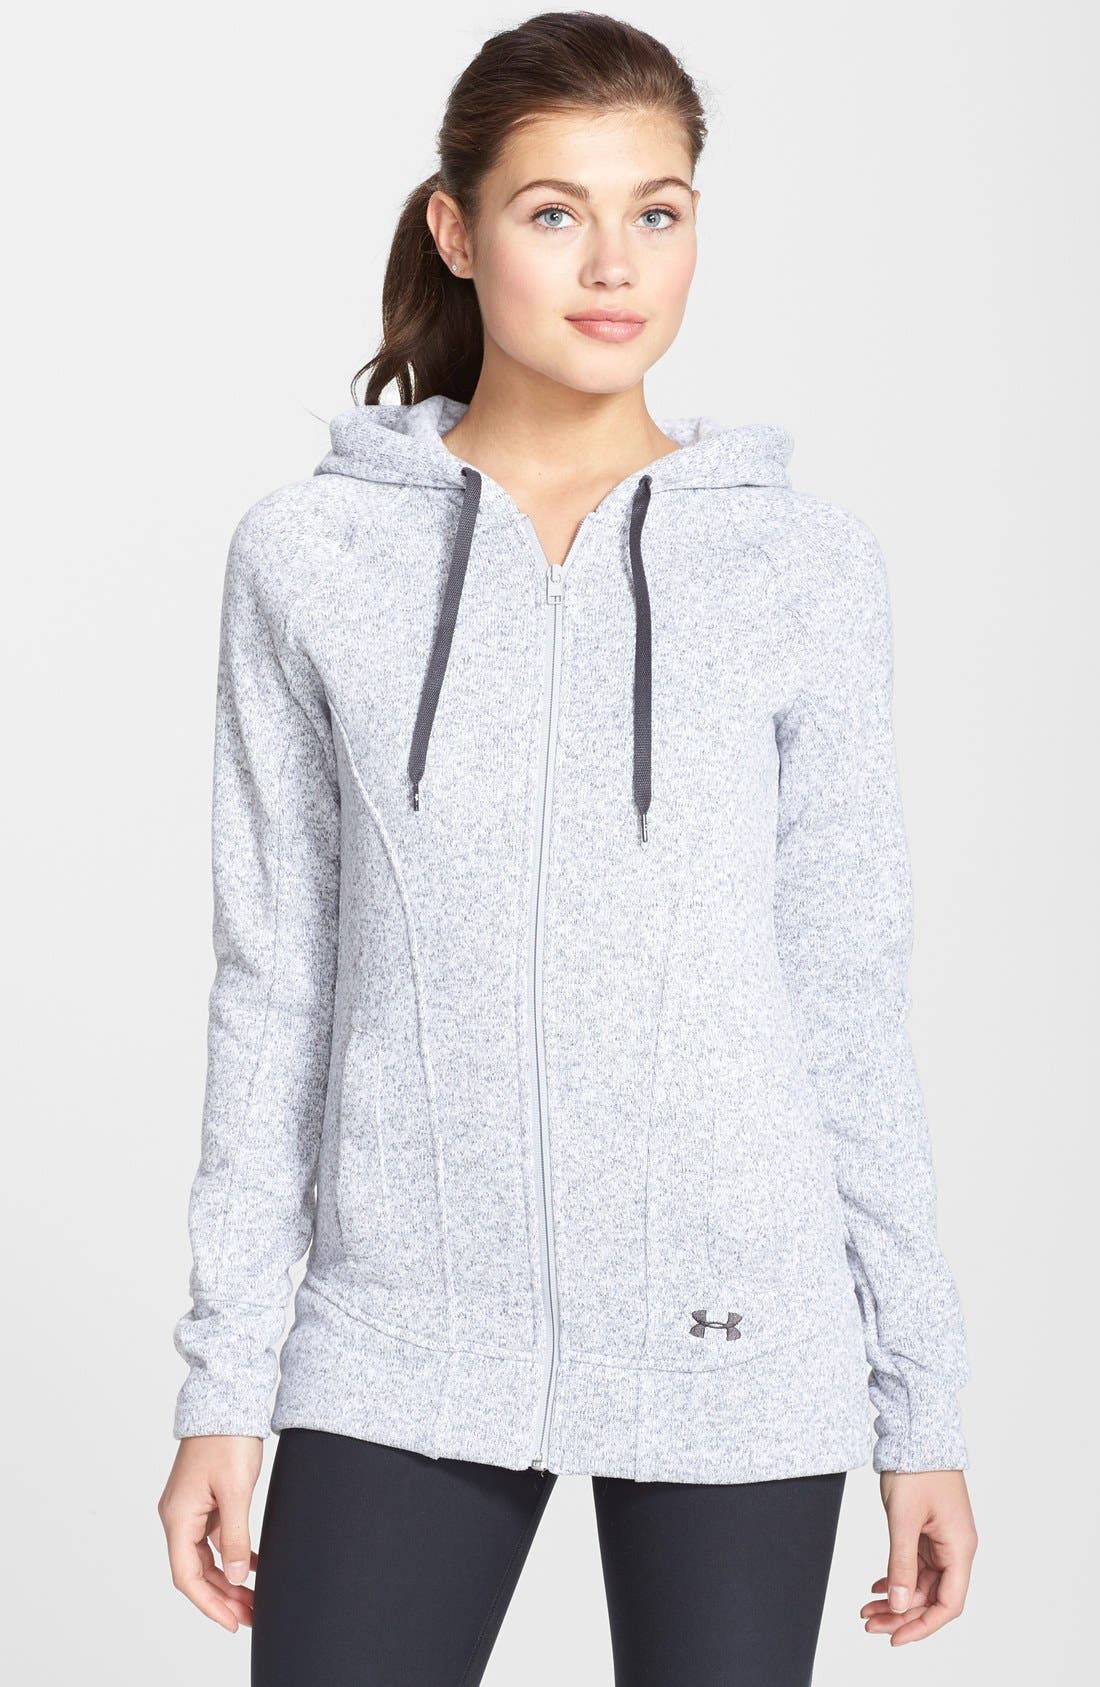 best zip up hoodies reddit